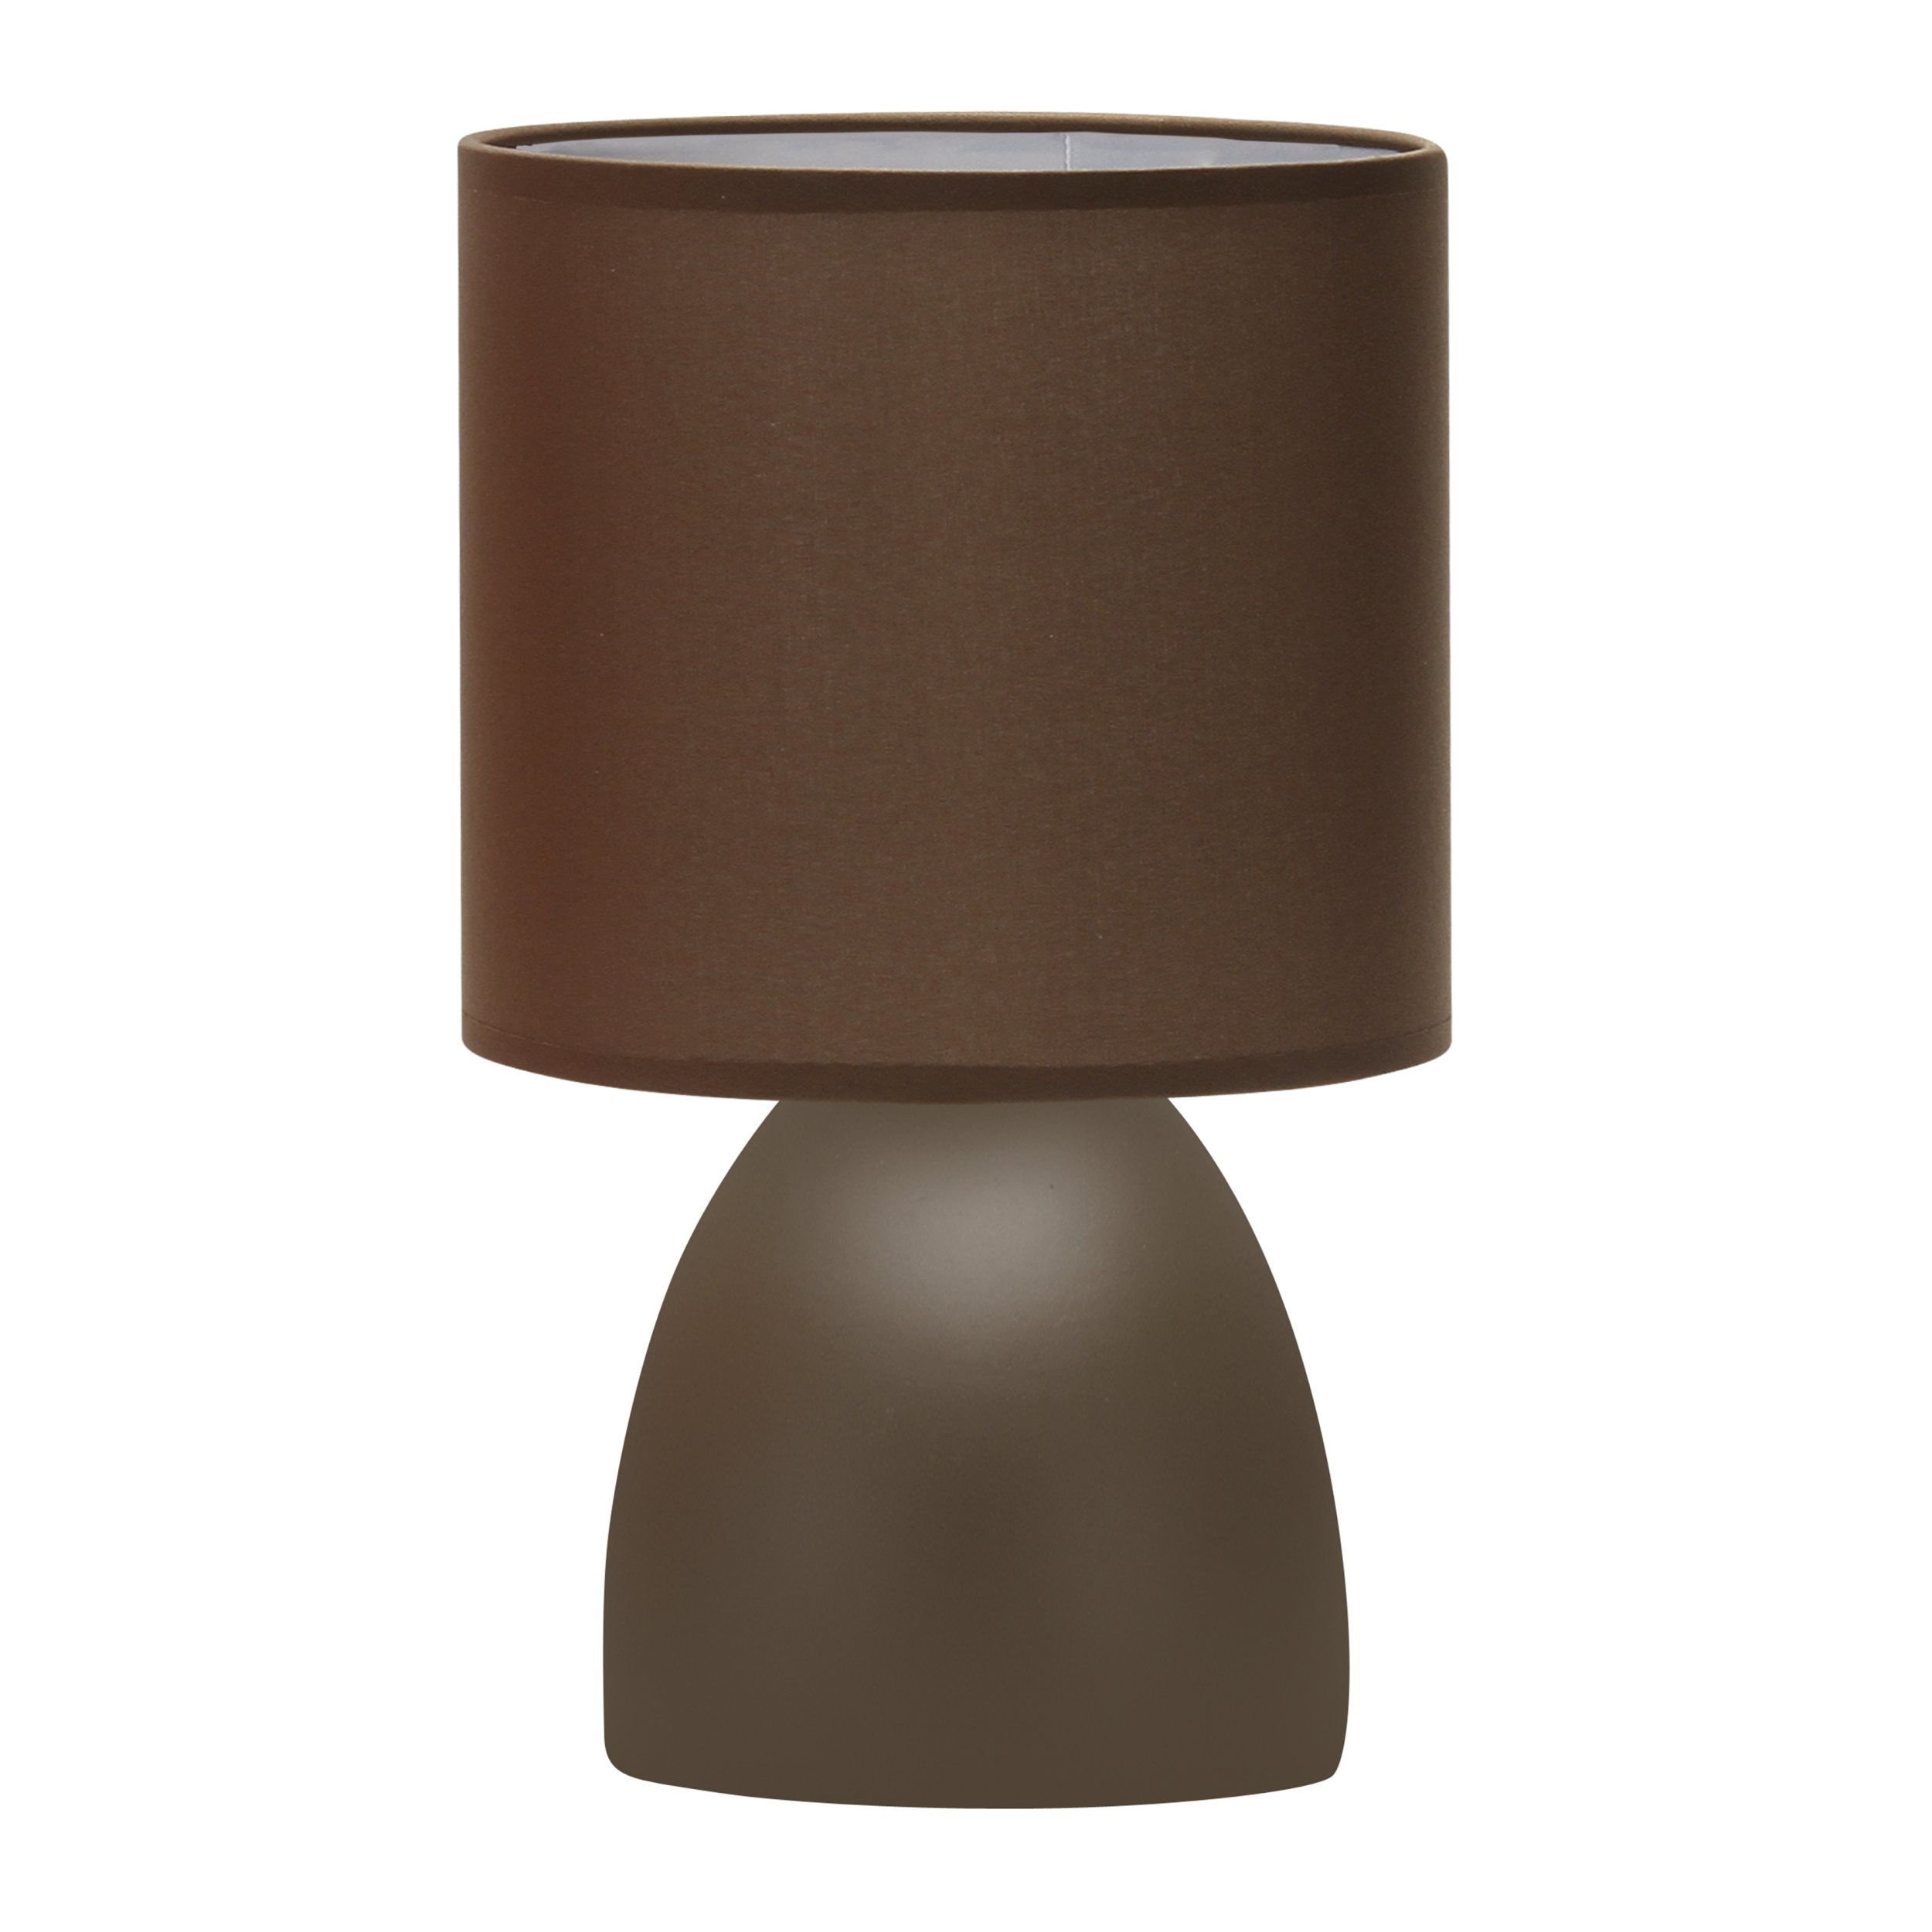 Декоративная настольная лампа Rivoli NADINE 7047-501, цвет коричневый 7047-501 Б0057256 - фото 1